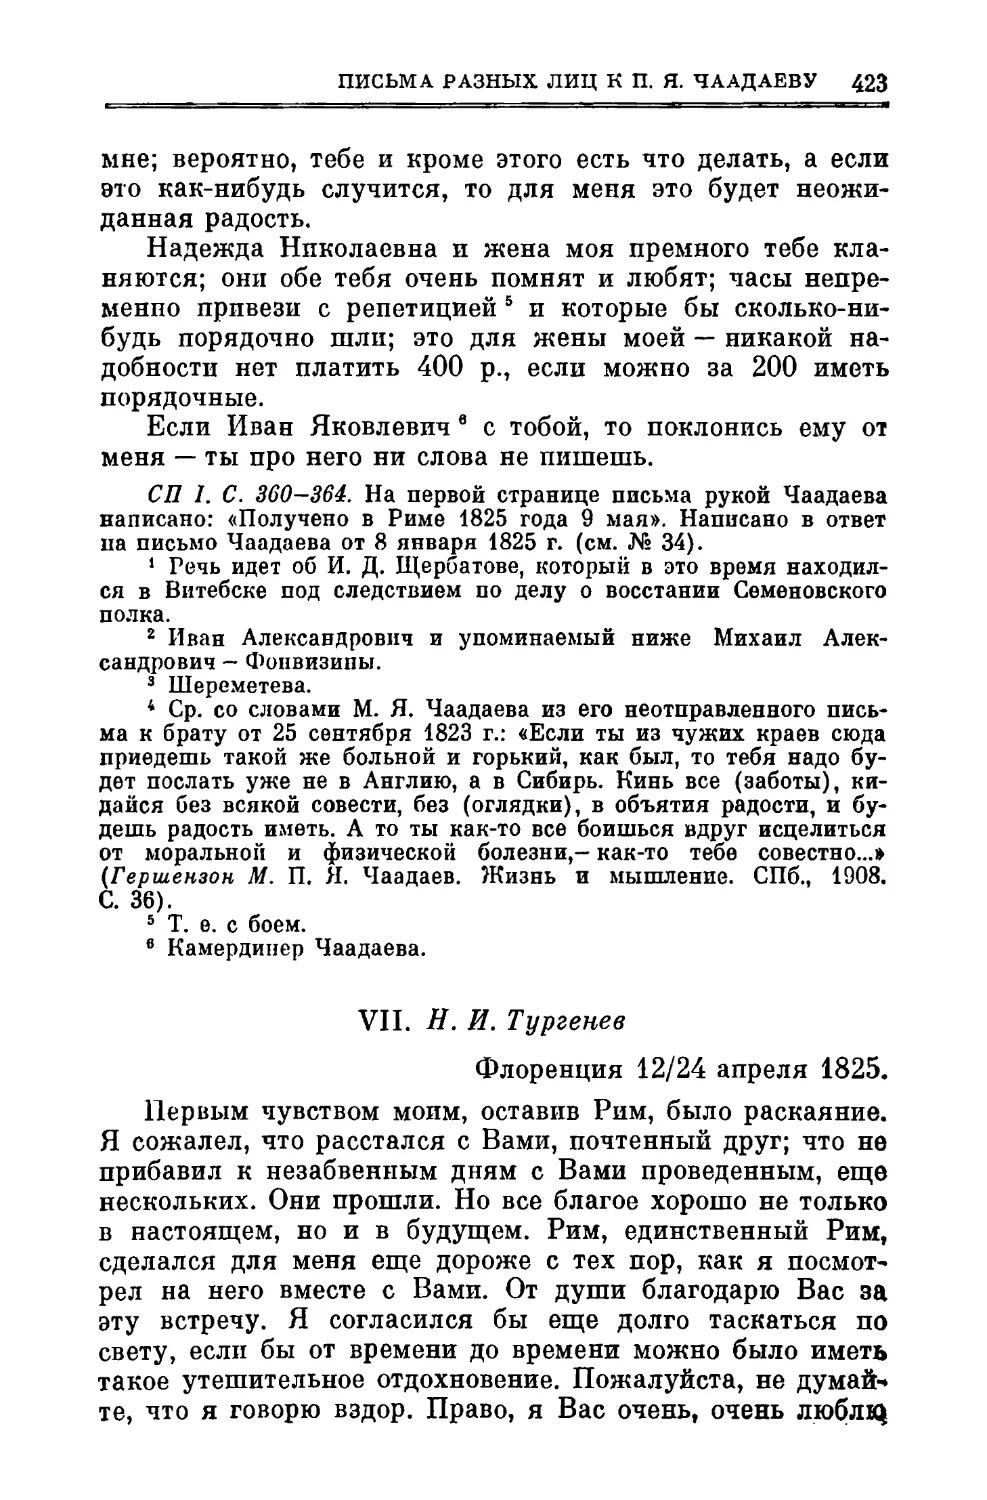 VII. Тургенев Н.И. 12/24.1 V.1825